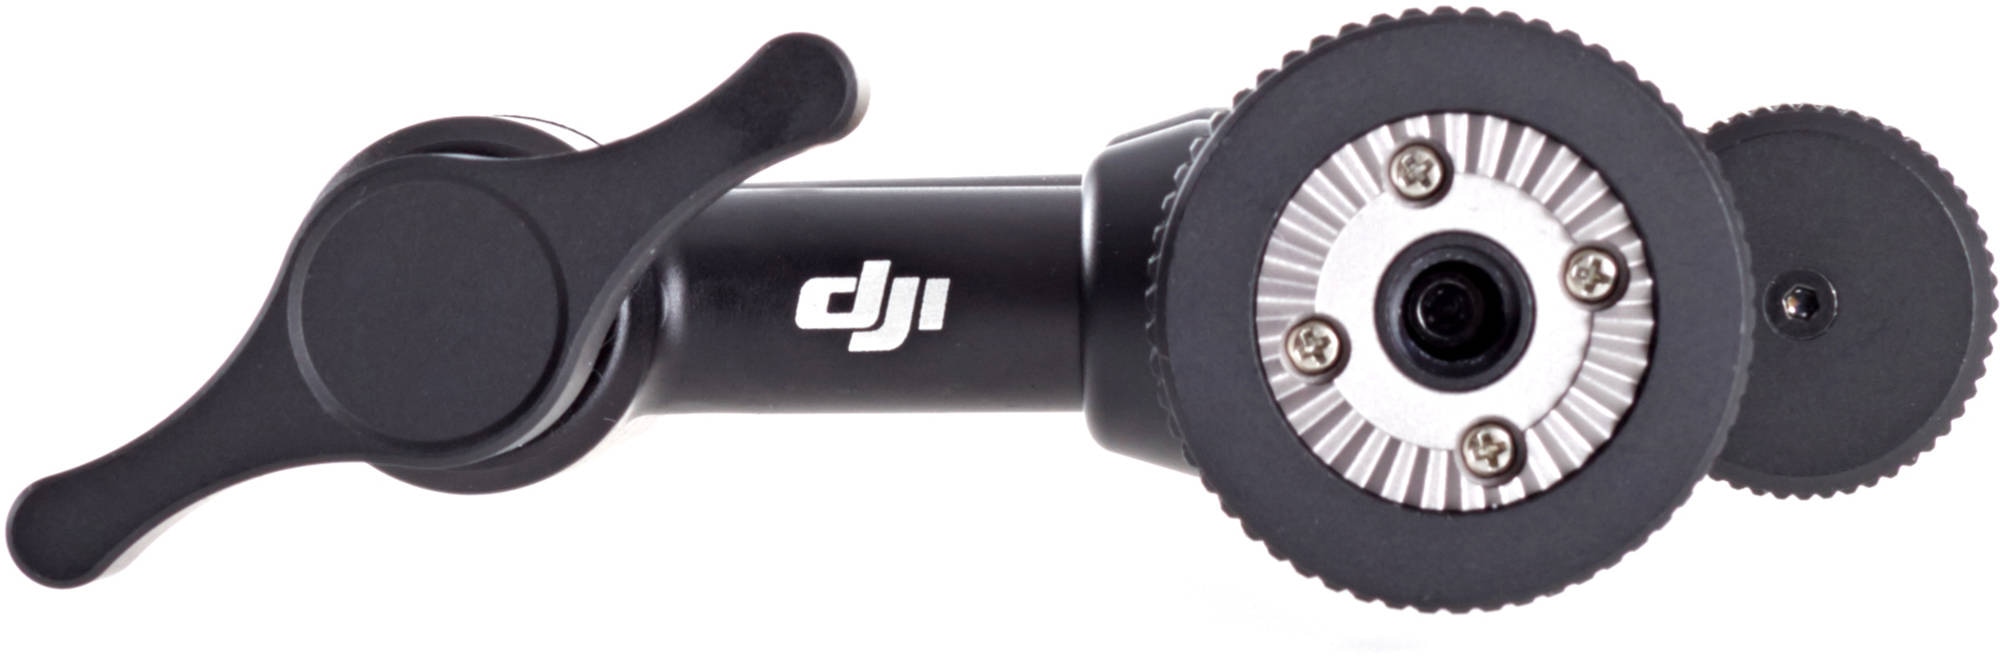 Шарнирно-поворотное крепление для DJI Osmo Articulating Locking Arm-3